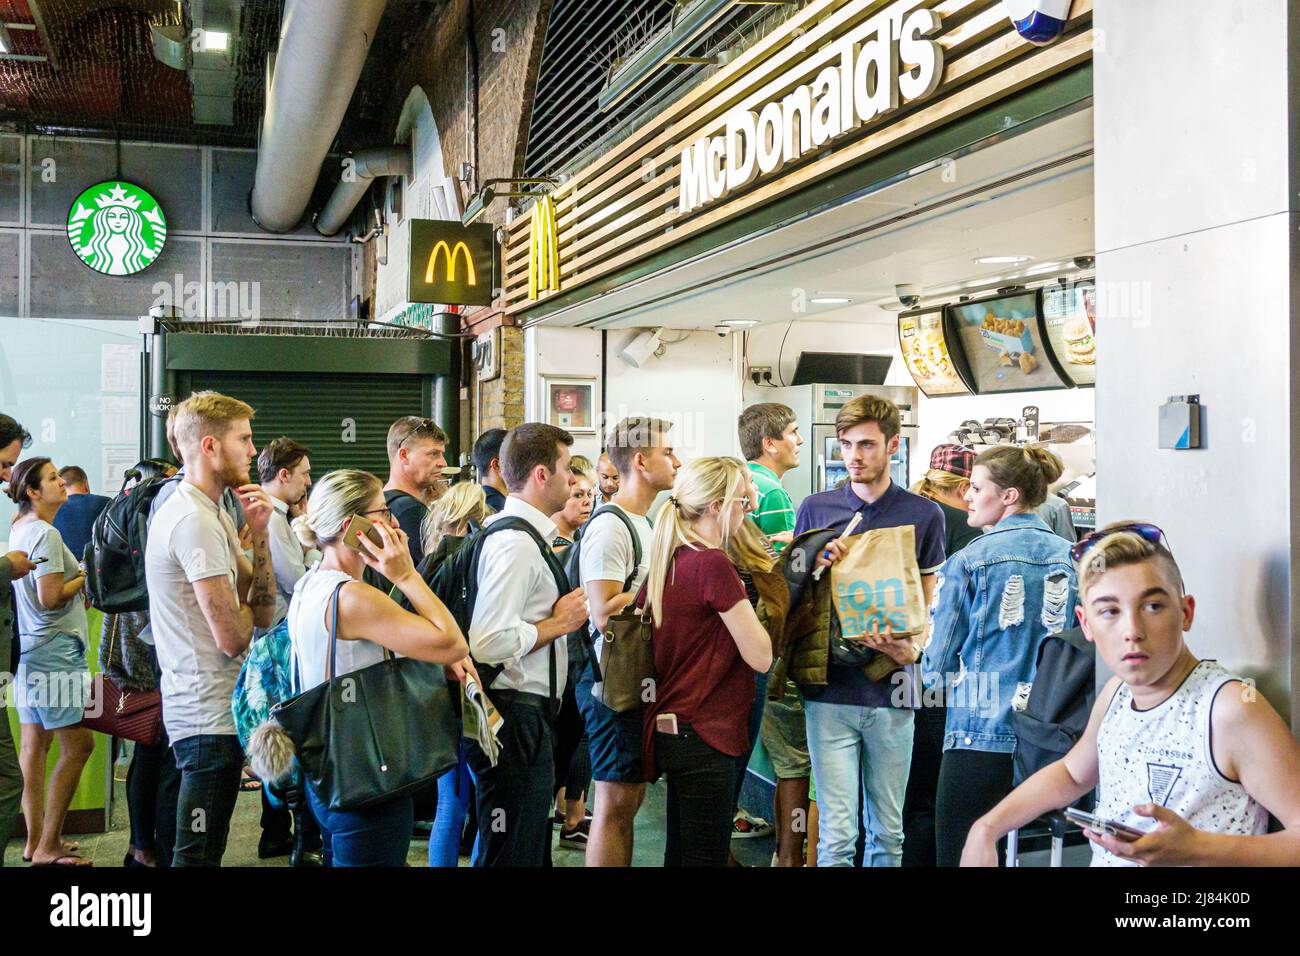 Londres Inglaterra, Reino Unido, Lambeth South Bank, Waterloo Station, McDonald's, mostrador de restaurantes de comida rápida, cola mujer hombre niño adolescente adolescentes adolescentes Foto de stock